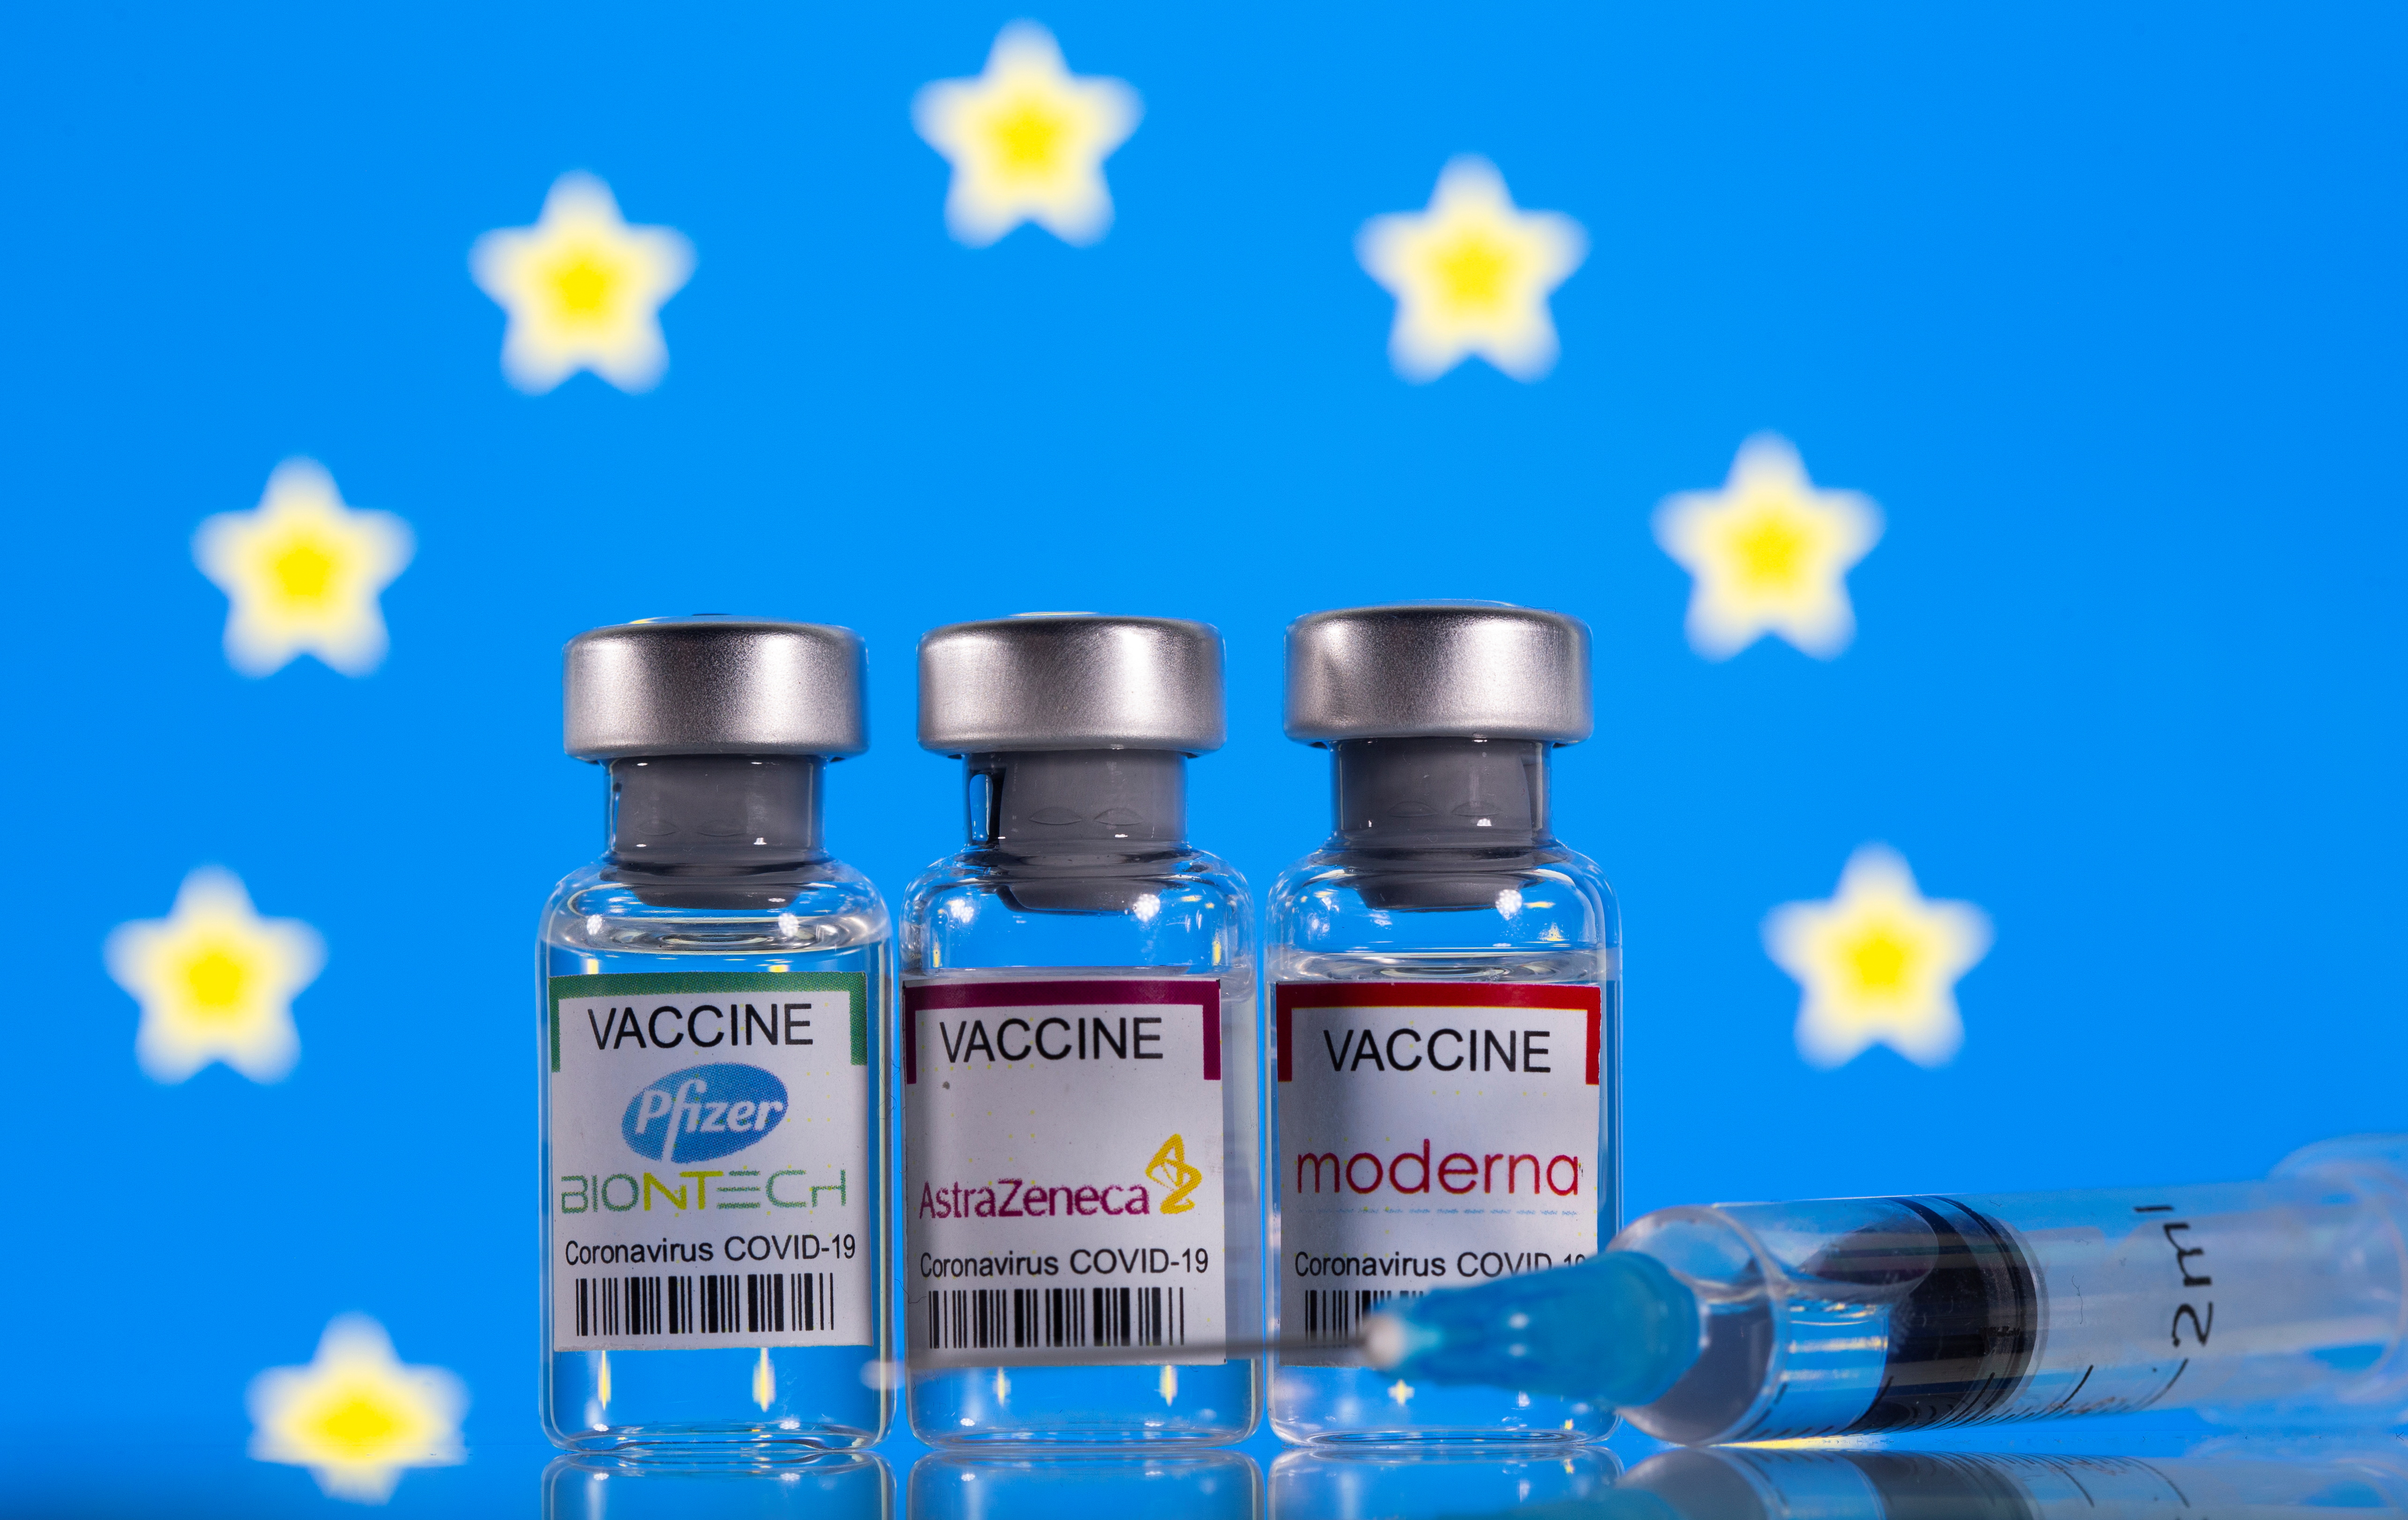 La Comisión Europea no renovará los contratos de vacunas contra el Covid-19 de AstraZeneca y Johnson & Johnson